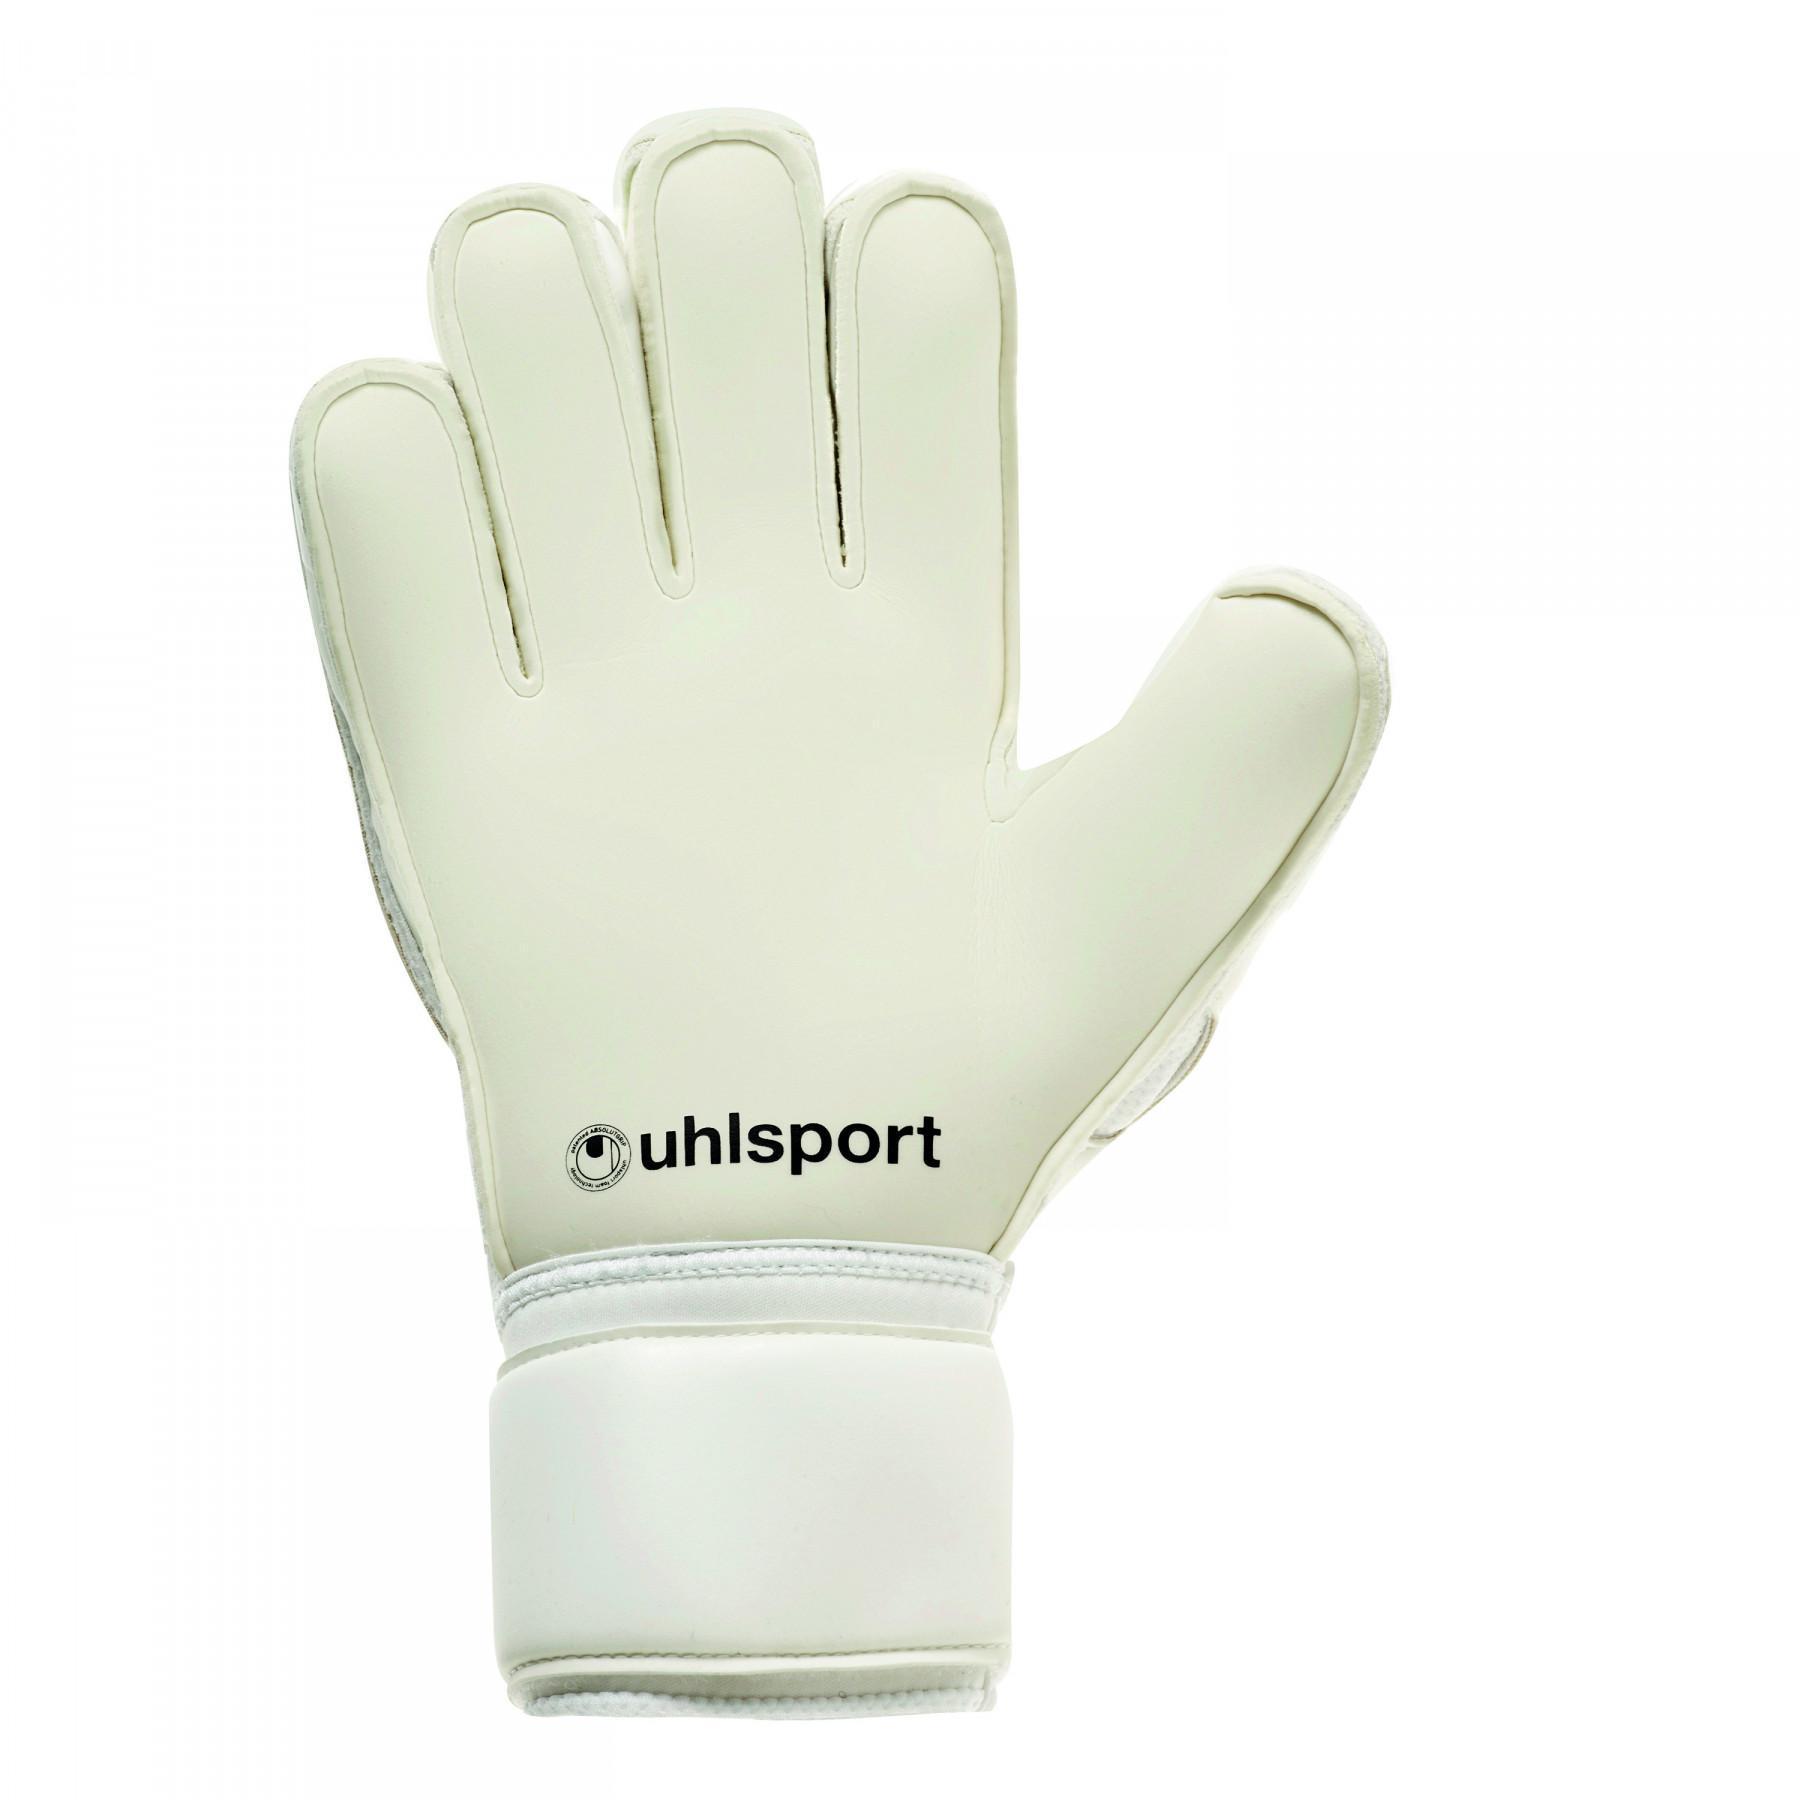 Goalkeeper gloves Uhlsport Absolutgrip Bionik +